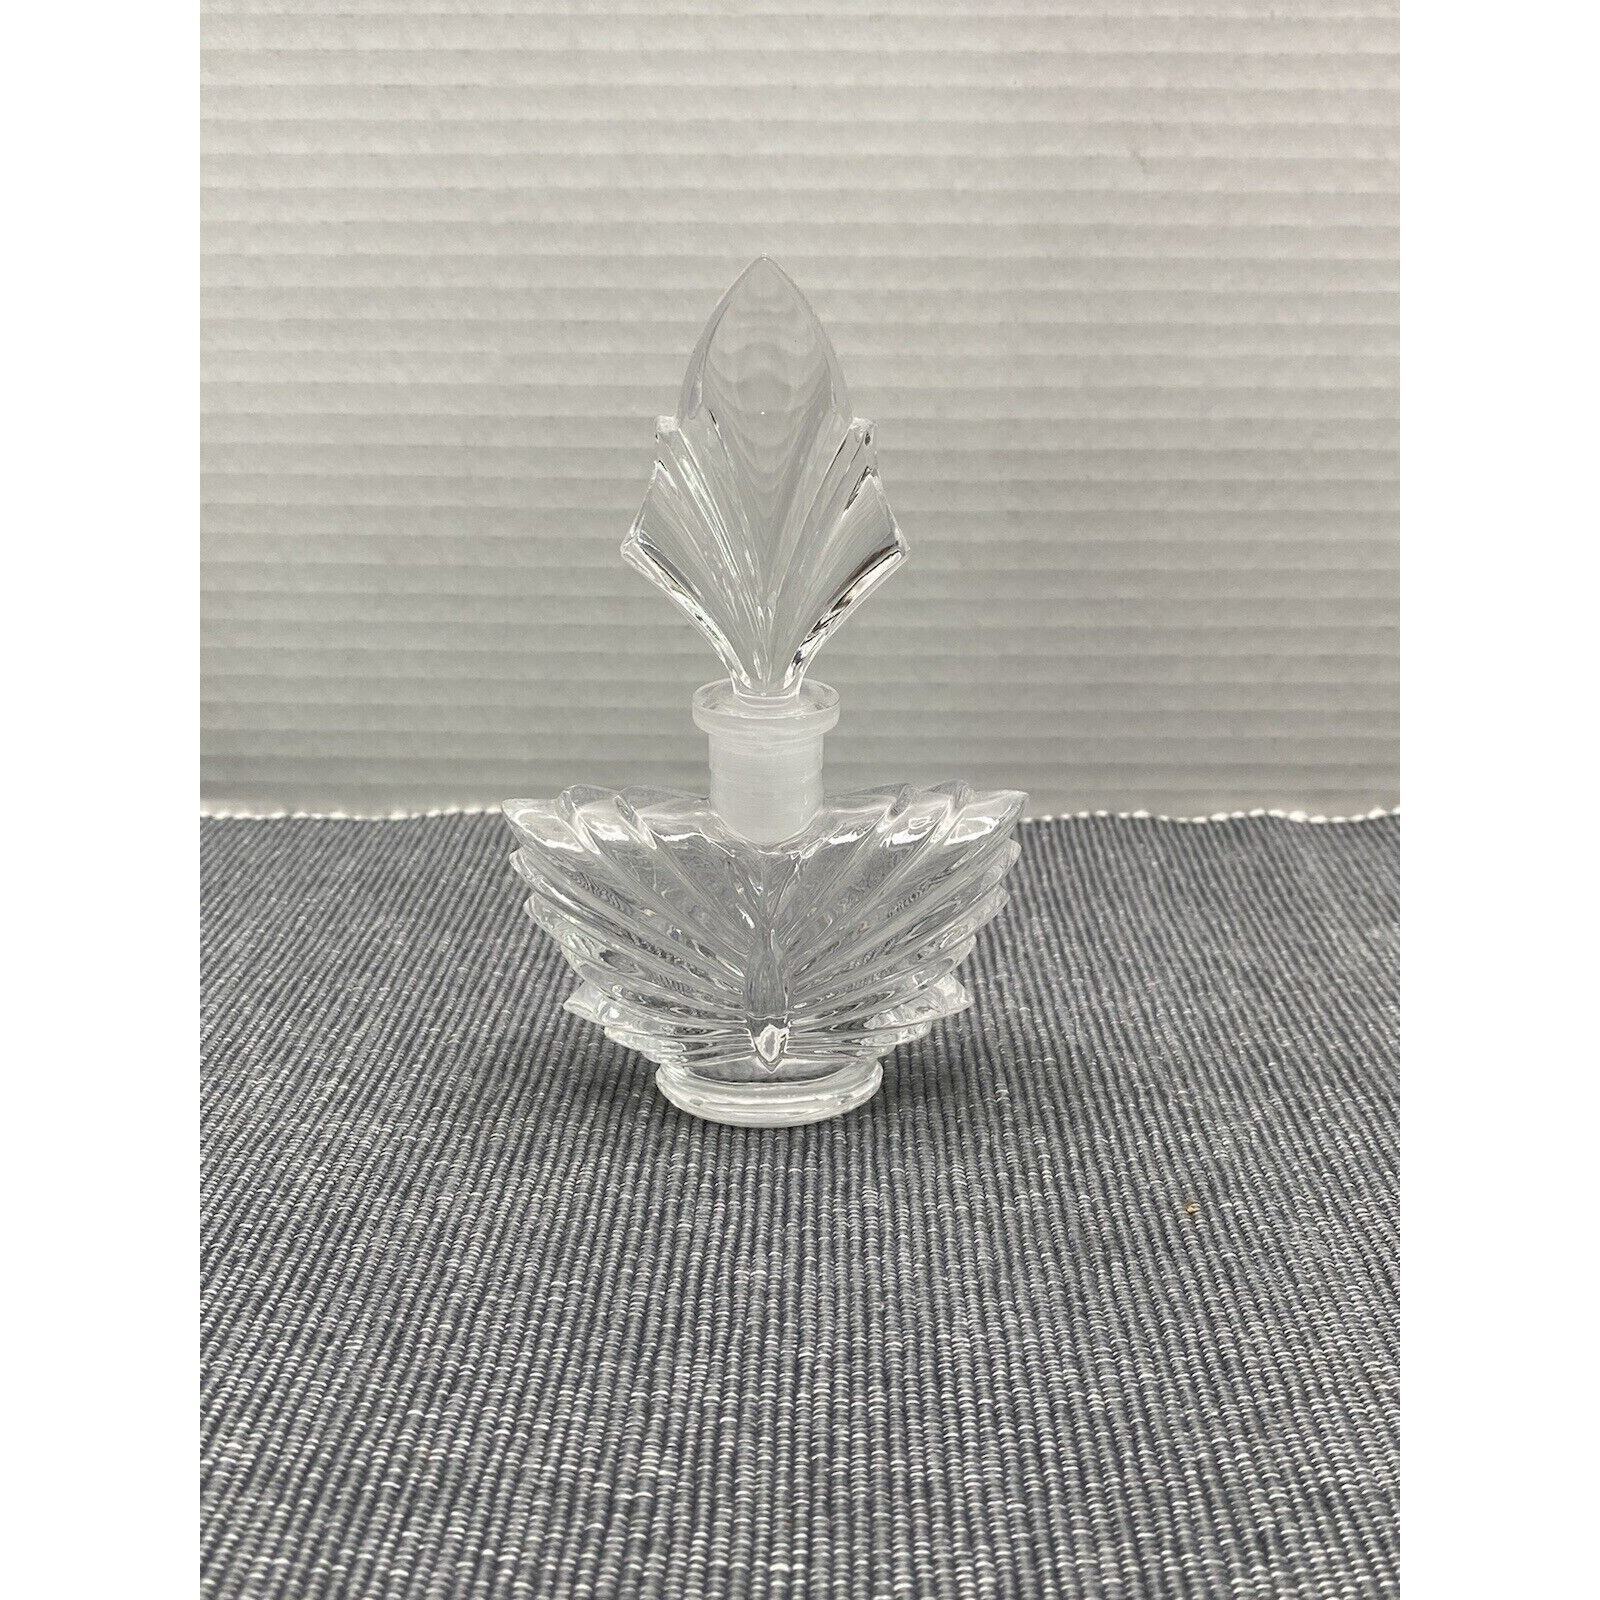 Vintage Gorham Cut Crystal Empty Perfume Bottle Butterfly Shape w/ Stopper 5.5”